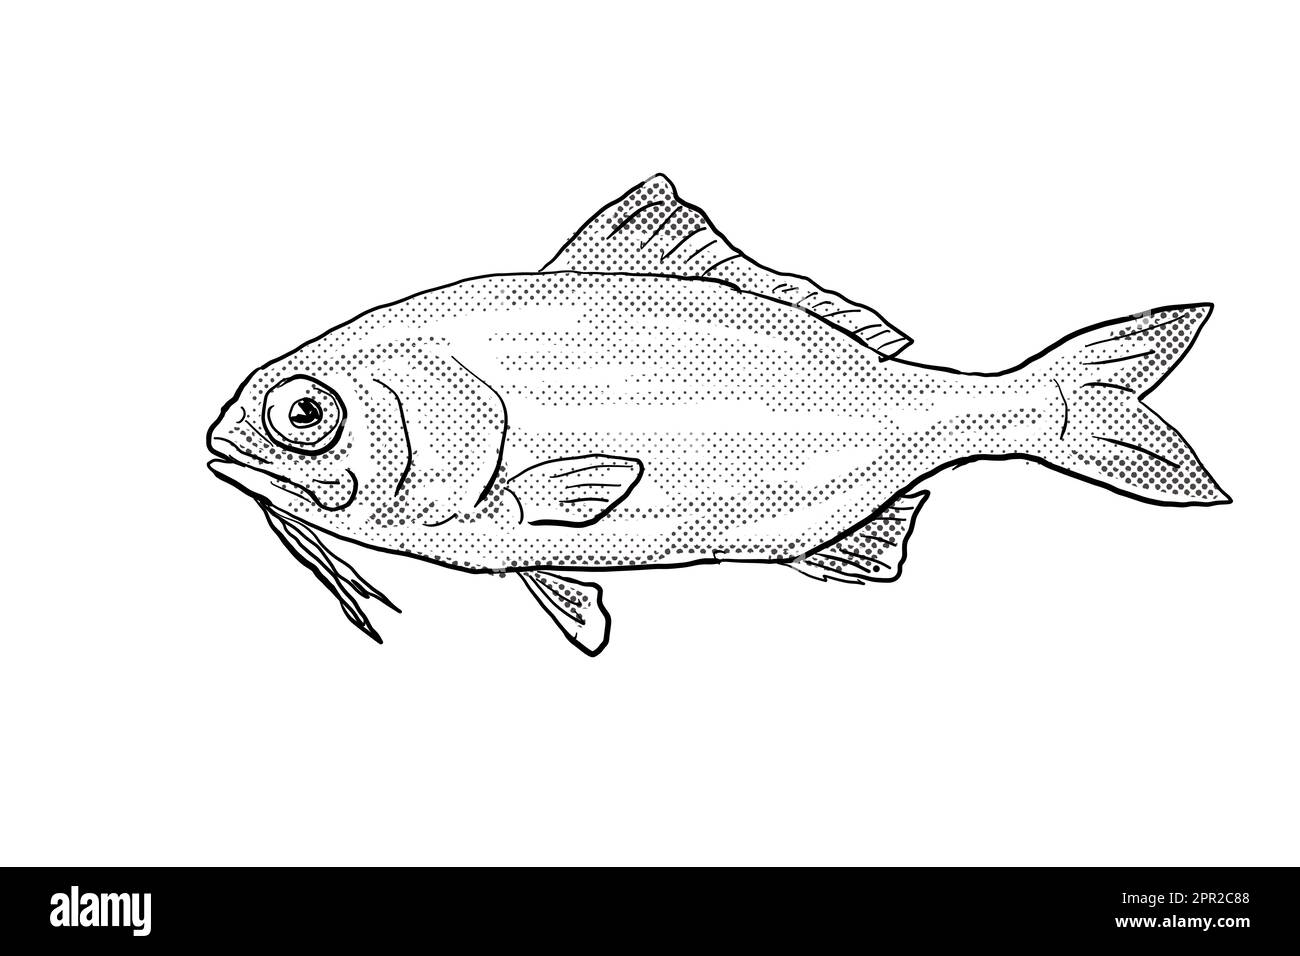 Dessin de style caricature d'un barbu, un poisson endémique à Hawaï et à l'archipel hawaïen avec des points de demi-teinte sur un fond isolé en noir Banque D'Images